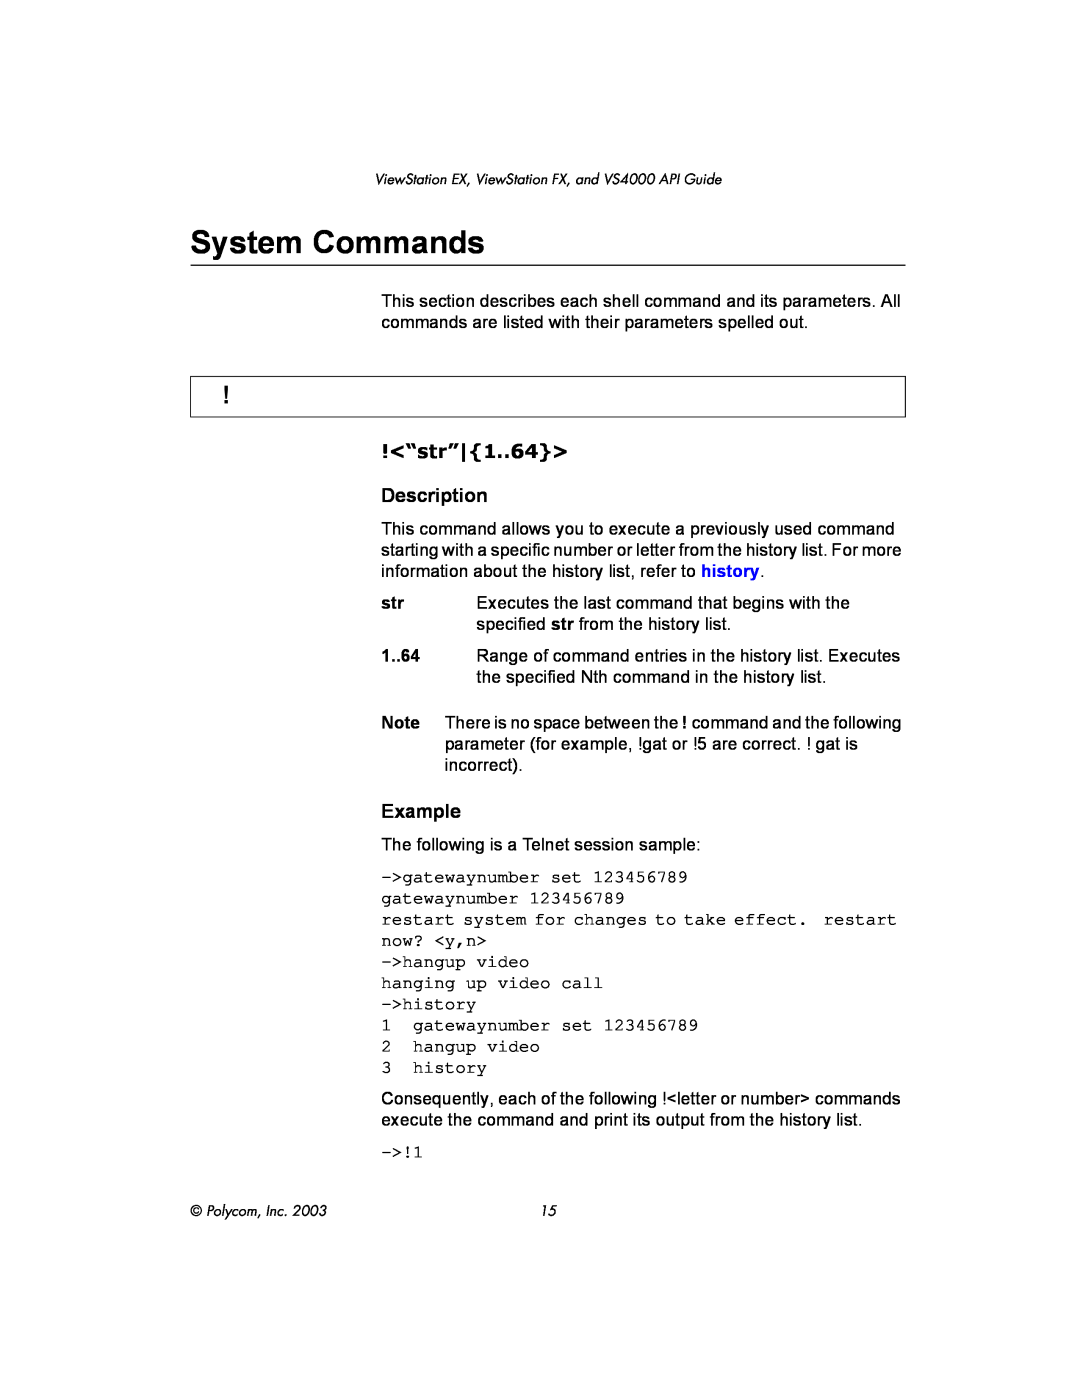 Polycom VIEWSTATION EX manual System Commands, <“str”|1..64>, Description, Example 